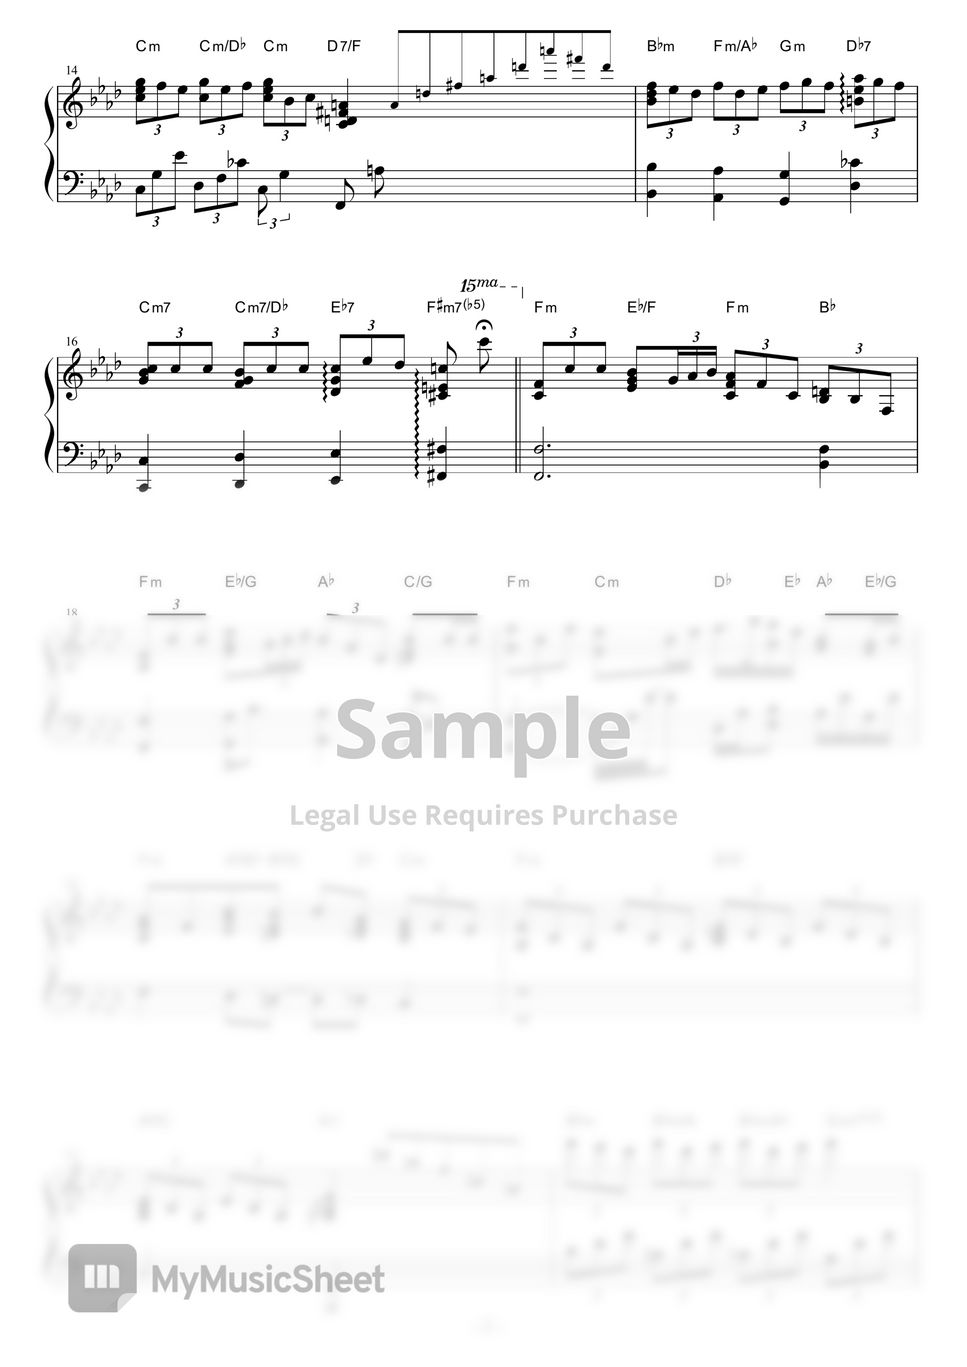 大野雄二 - 炎のたからもの (ルパン三世より(slow jazz ver.)) by piano*score